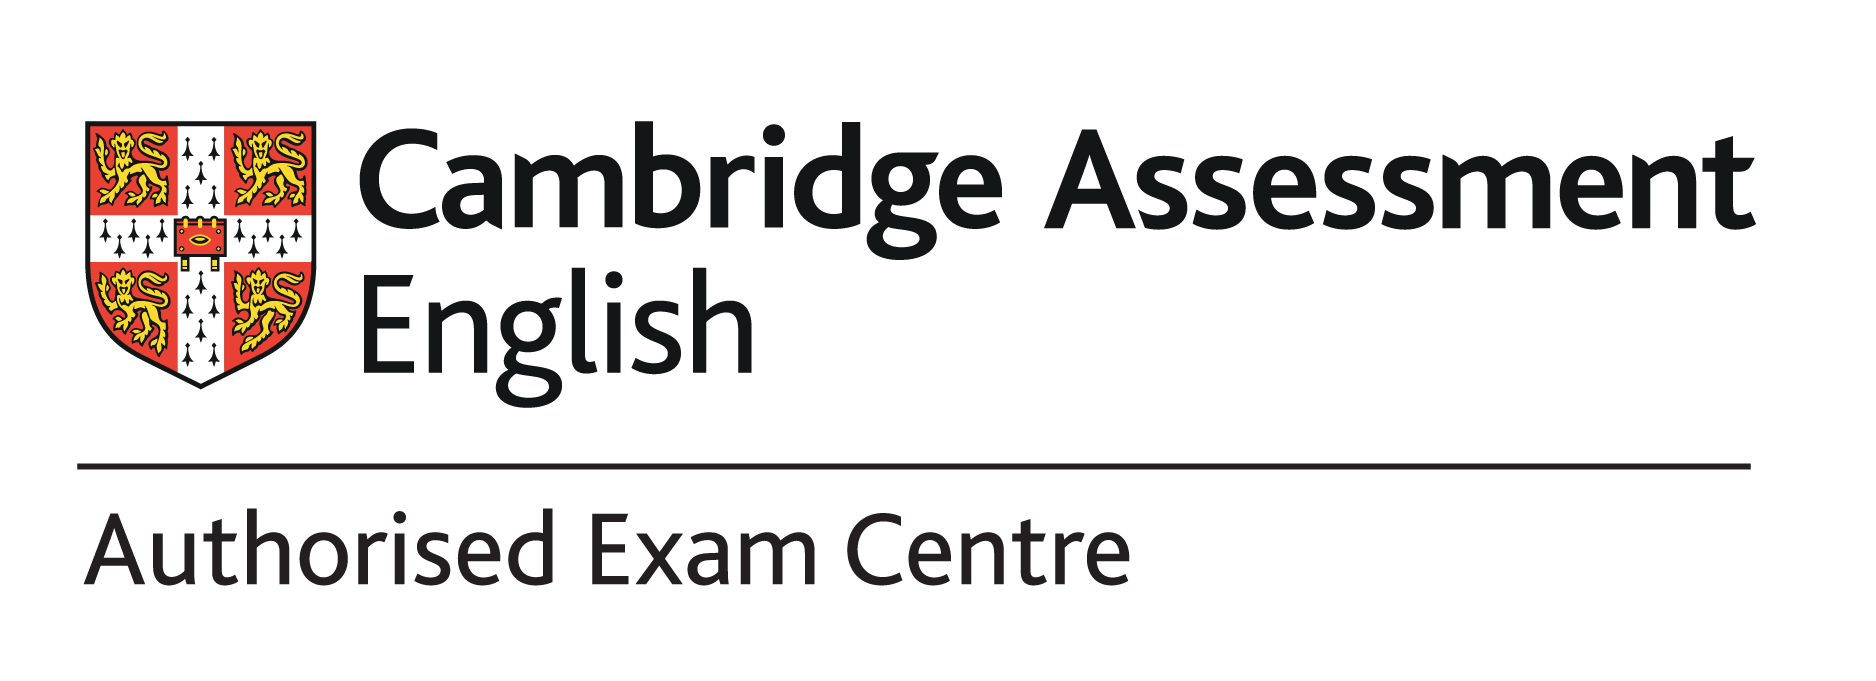 Authorised exam centre logo RGB